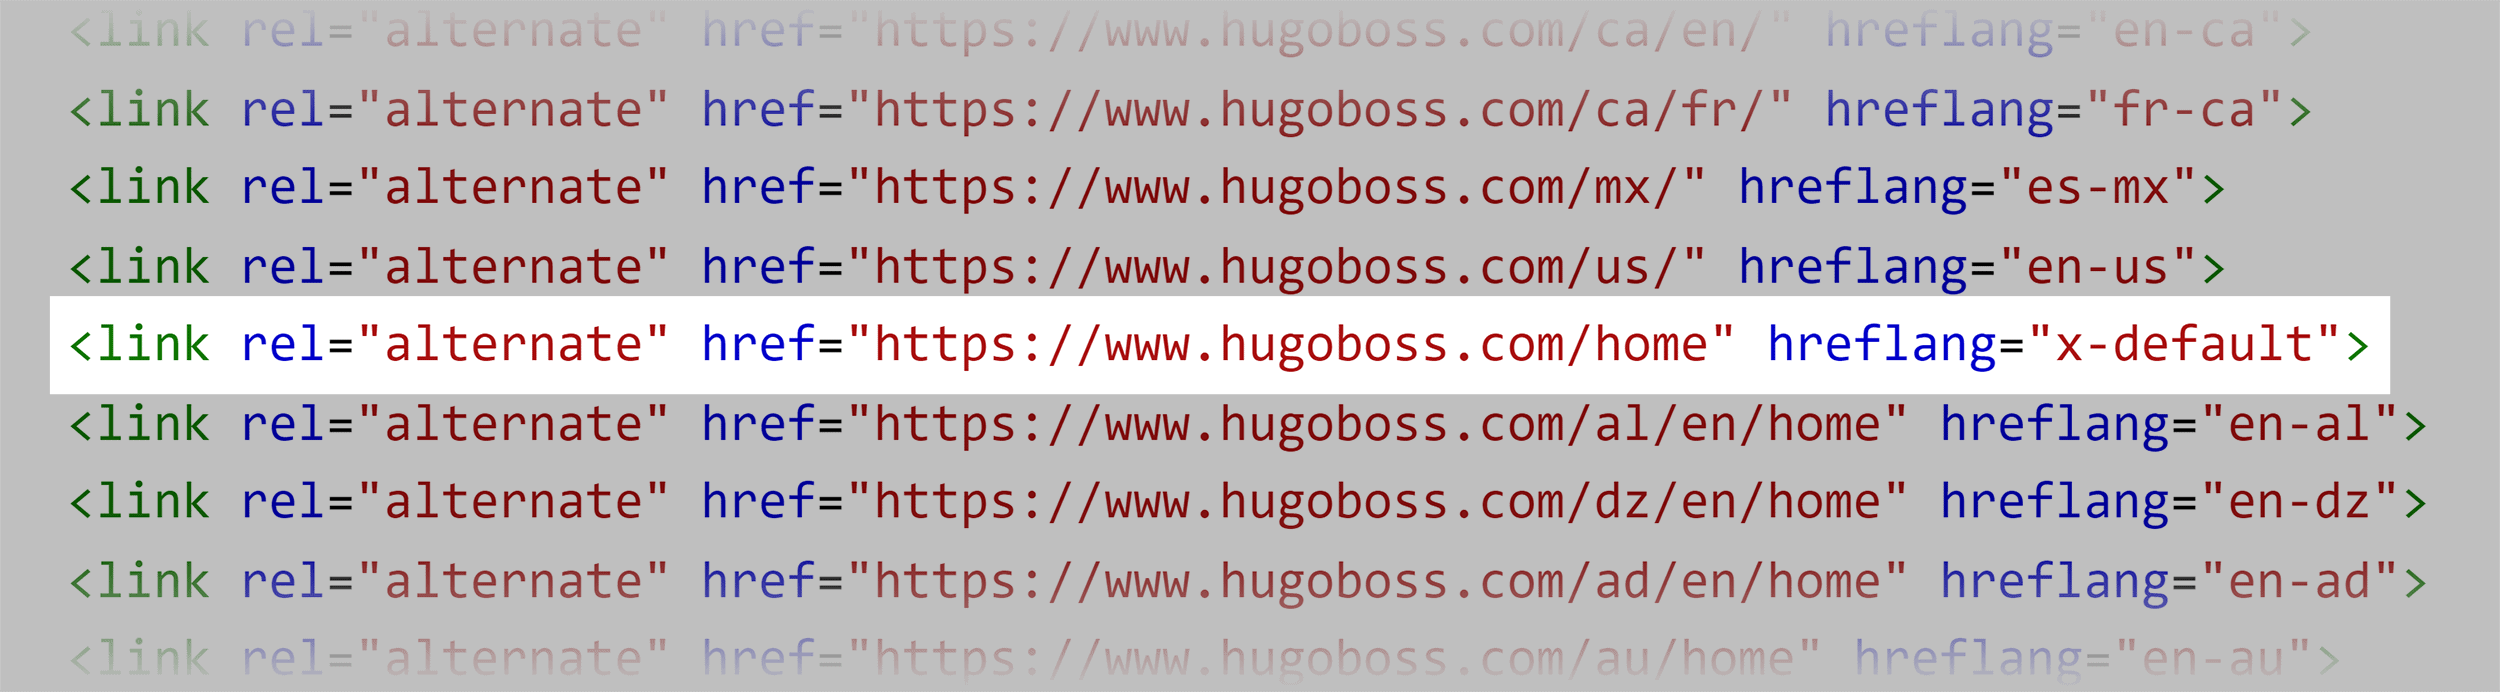 Hugo Boss – X-default hreflang